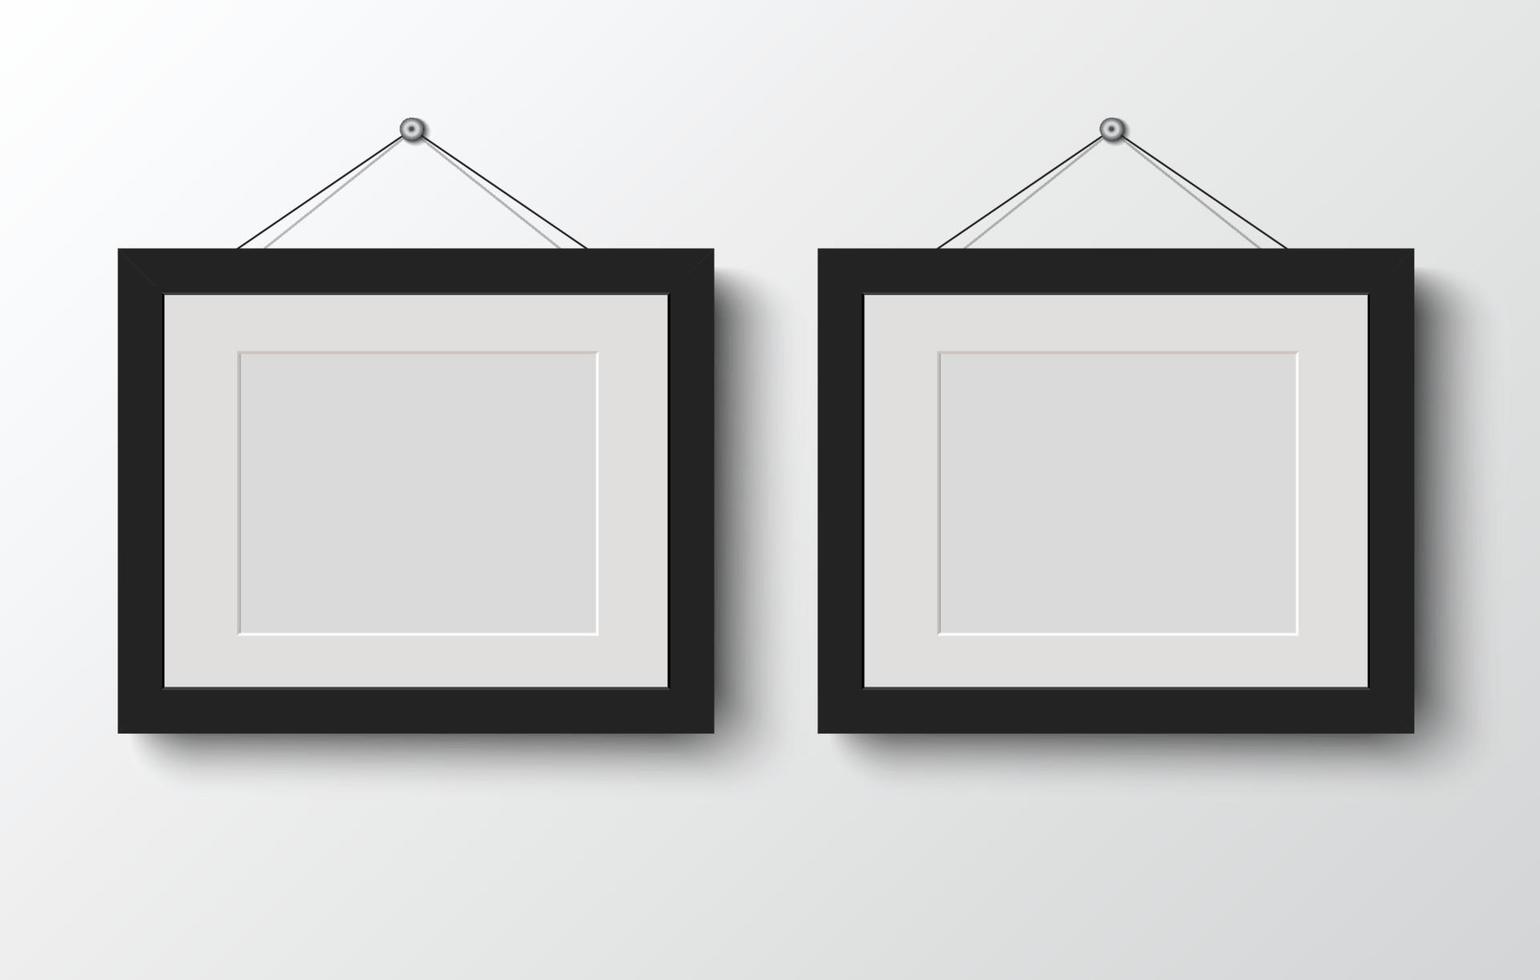 marco de fotos en blanco sobre fondo gris.ilustración vectorial vector